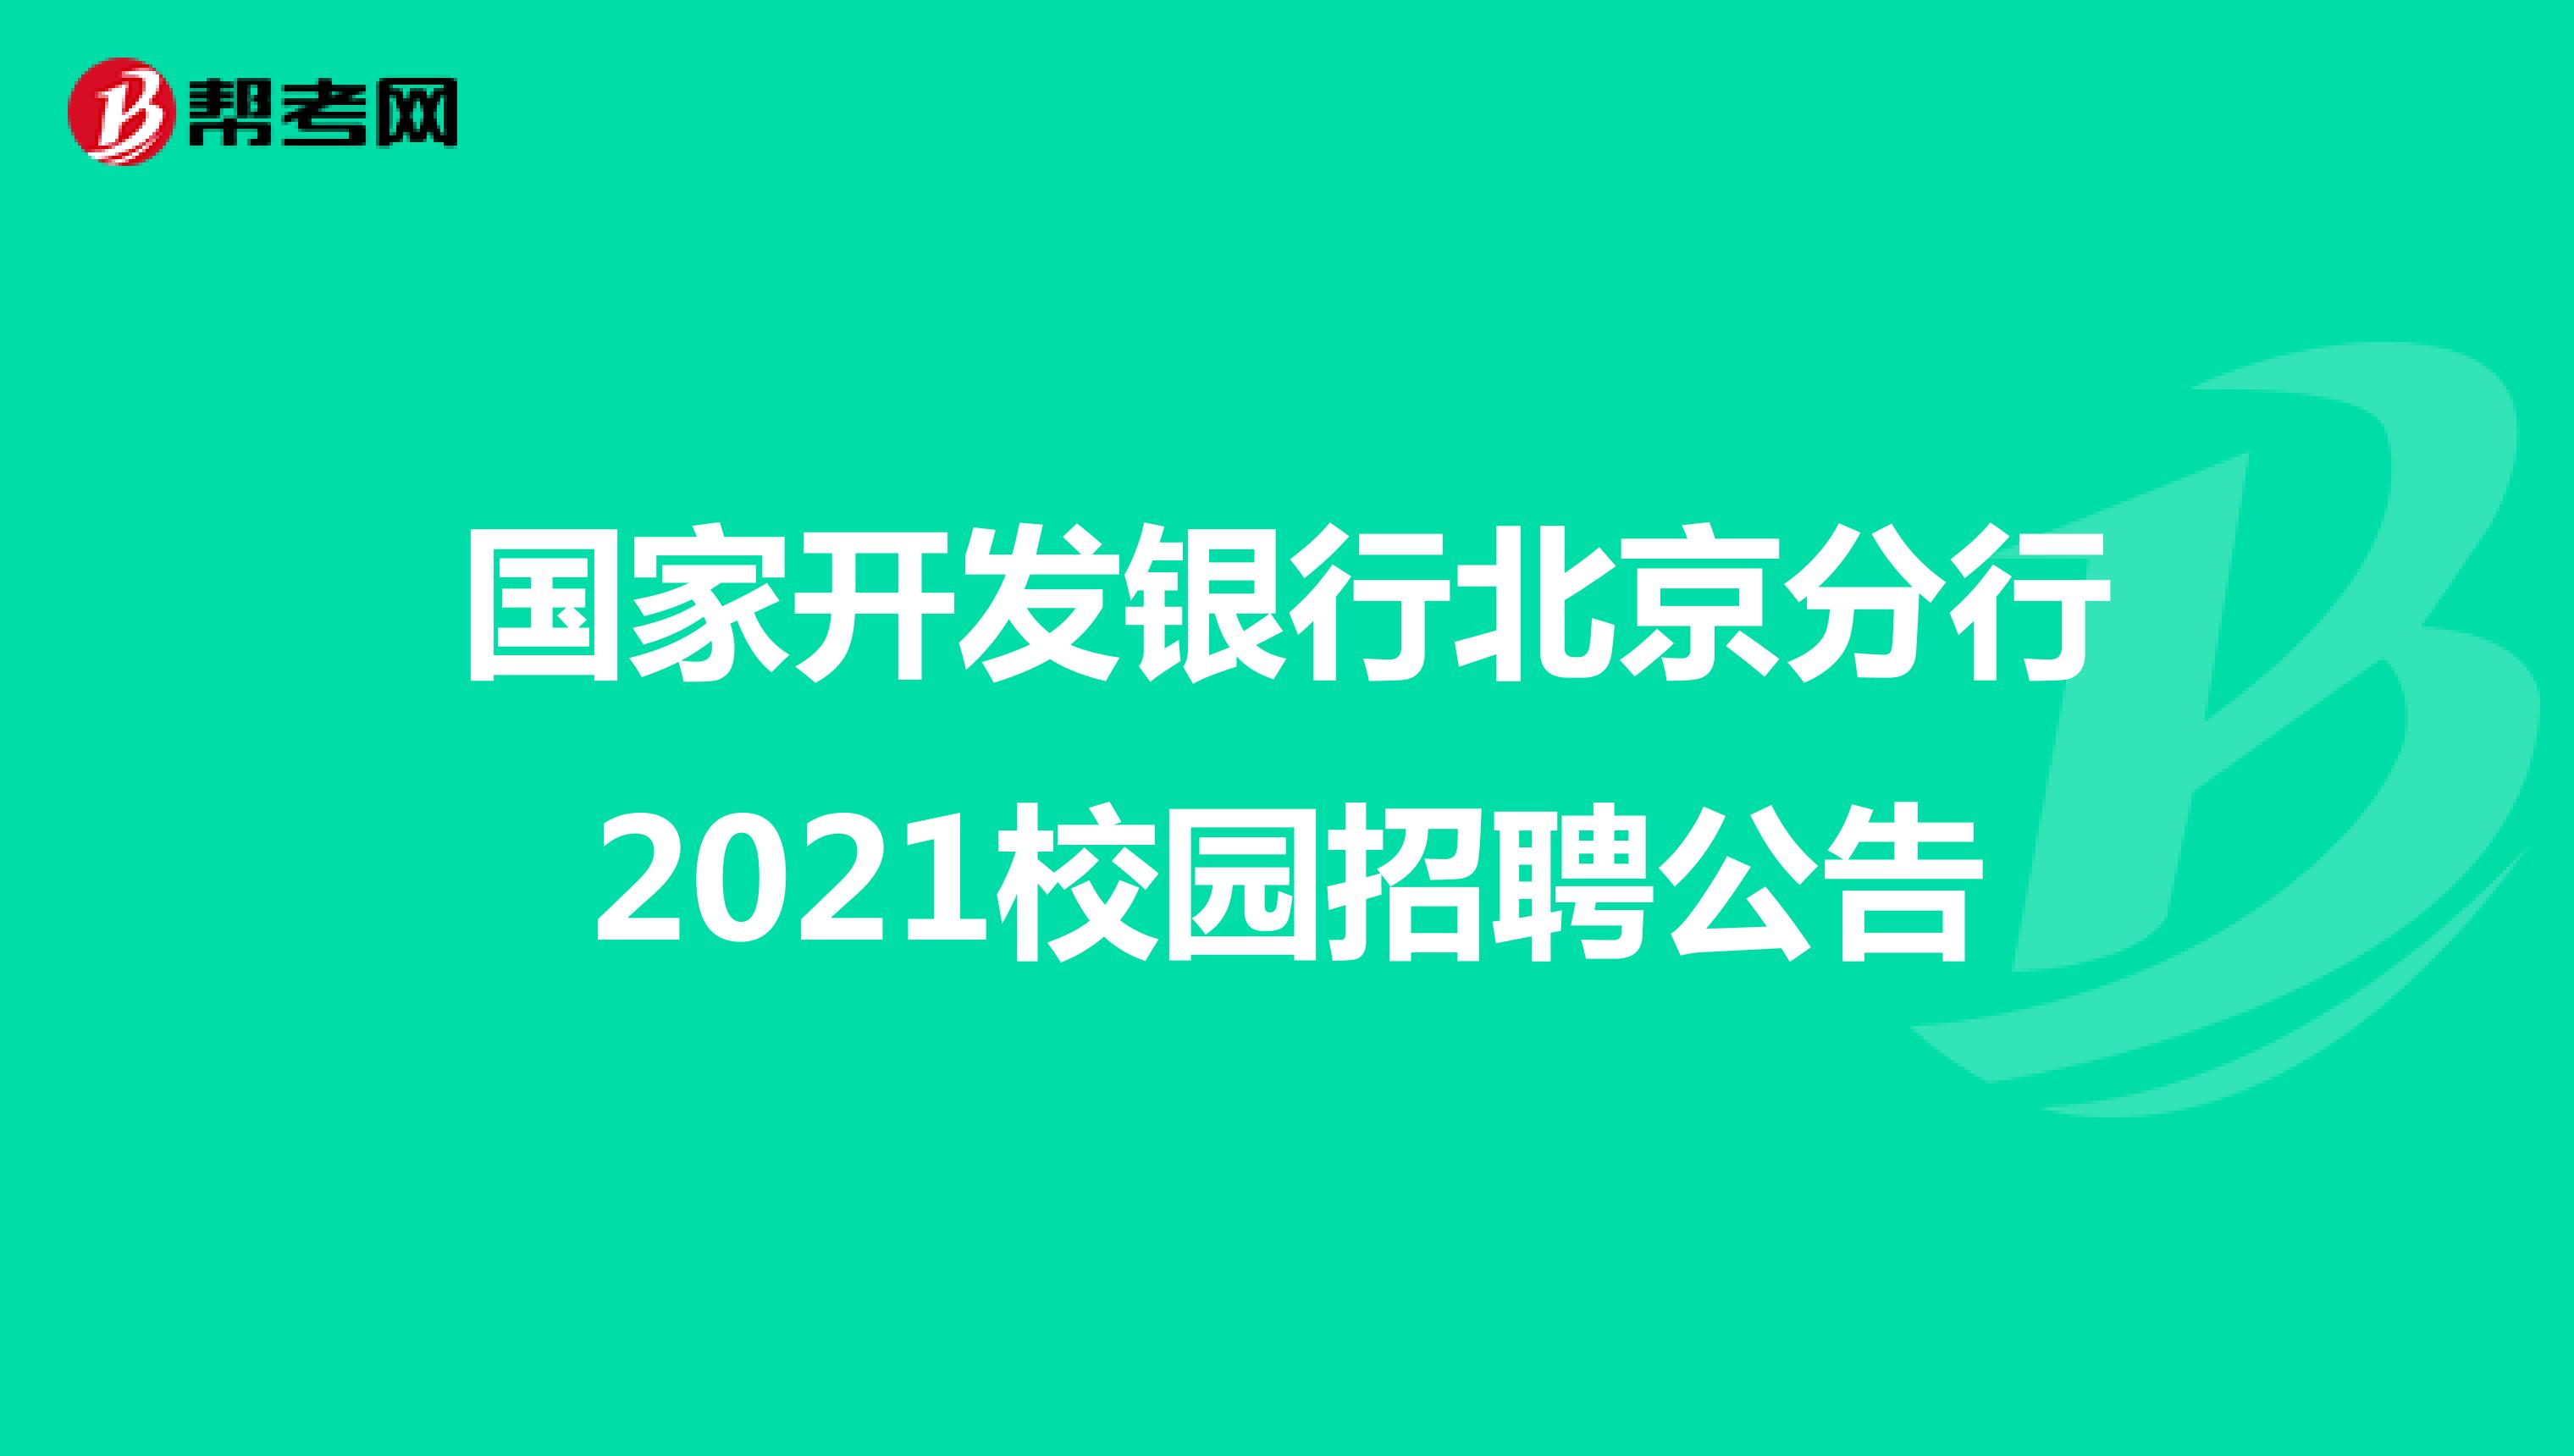 国家开发银行北京分行2021校园招聘公告